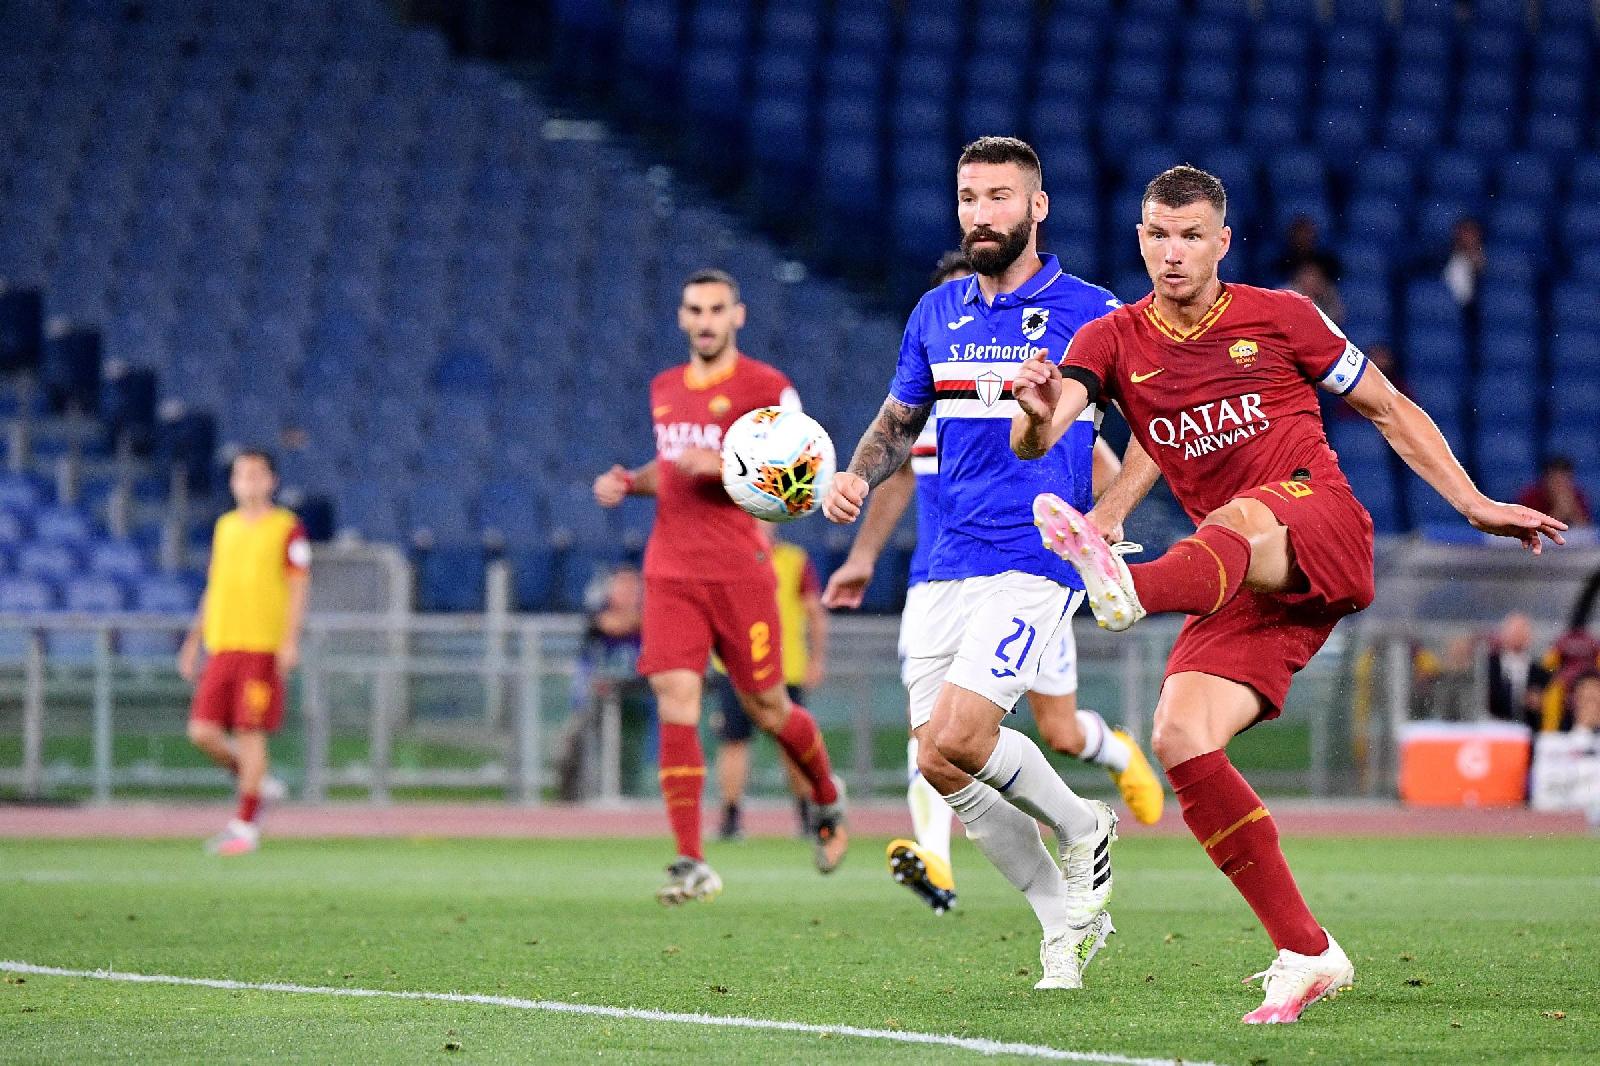 24 giugno 2020: alla ripresa del campionato dopo lo stop per il Covid, la Roma batte la Samp. Nella foto il gol dell’1-1 di Dzeko ©LaPresse